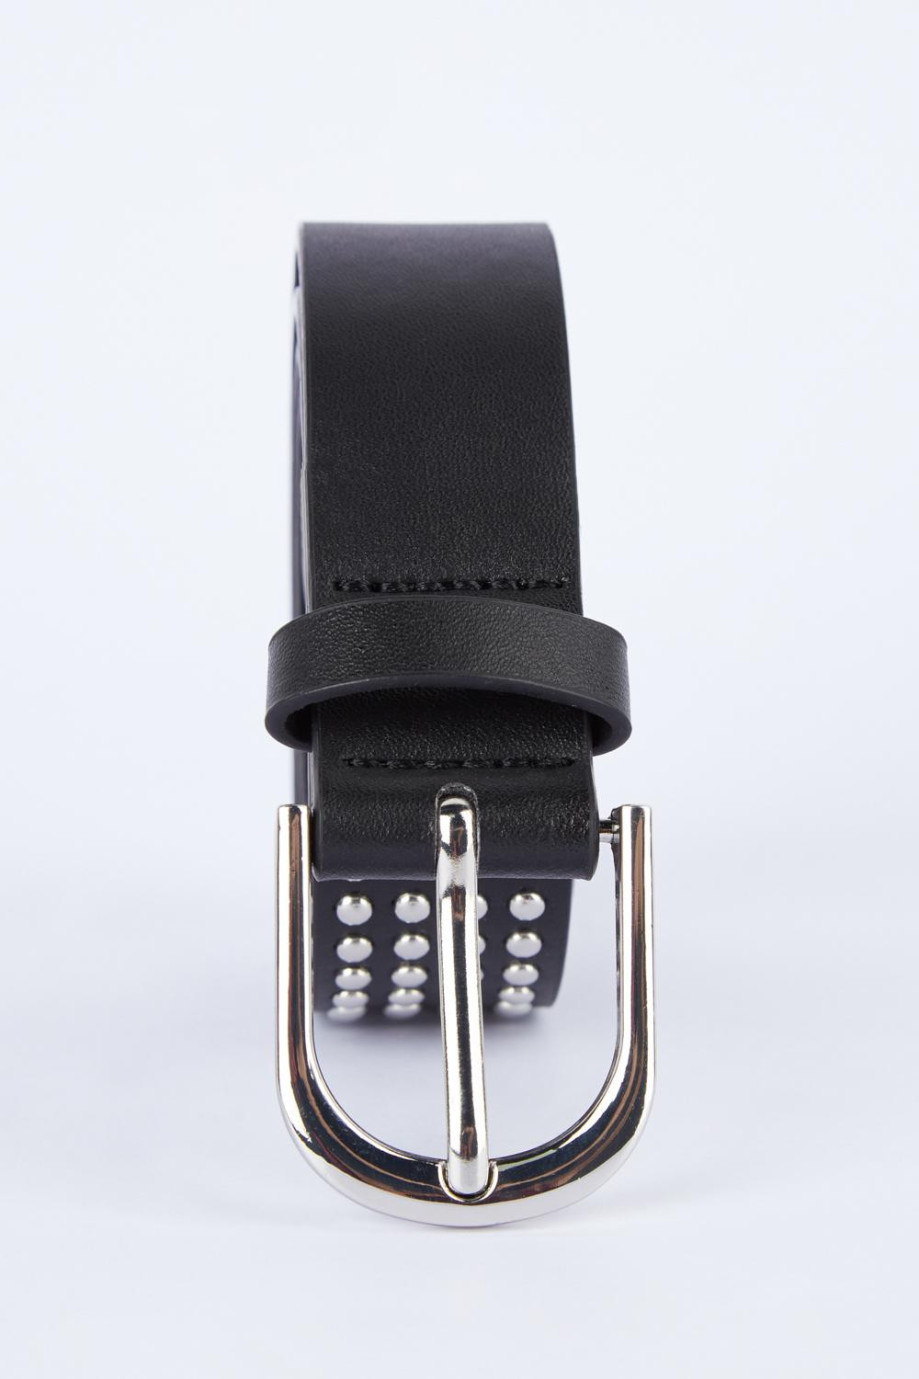 Cinturón negro con esferas metálicas decorativas y hebilla cuadrada